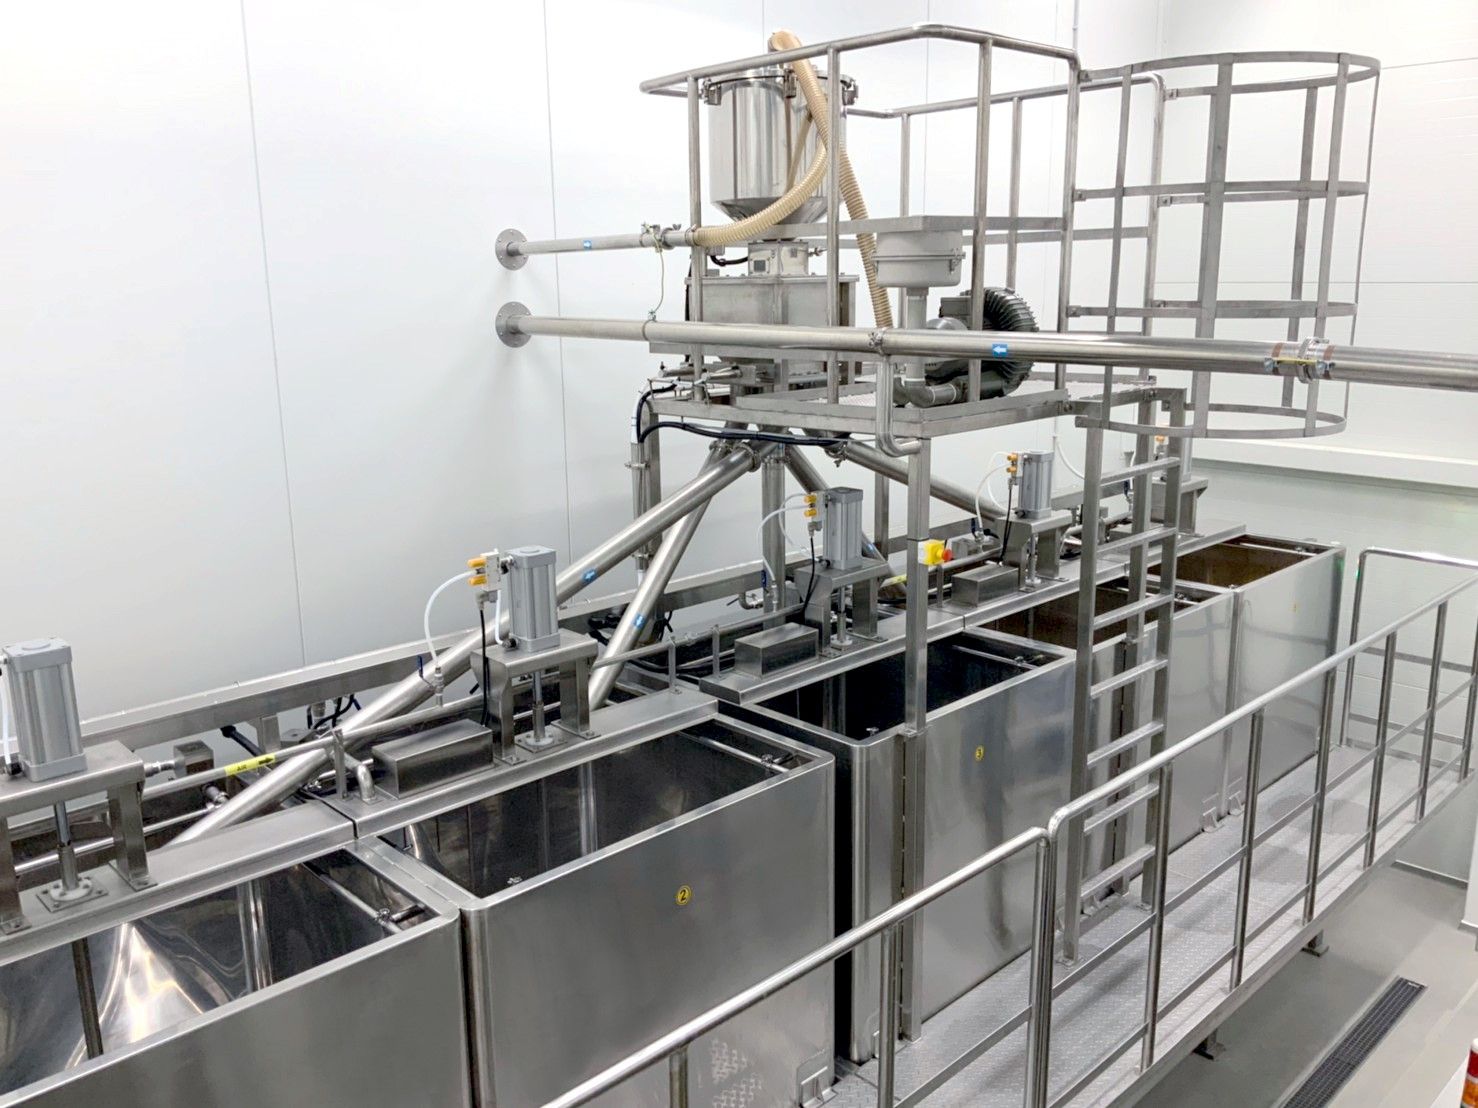 Автоматическое управление временем замачивания для обеспечения качества замачивания бобов и стабильного соотношения замачивания бобов, чтобы обеспечить стабильную добычу соевого молока во время процесса экстракции.